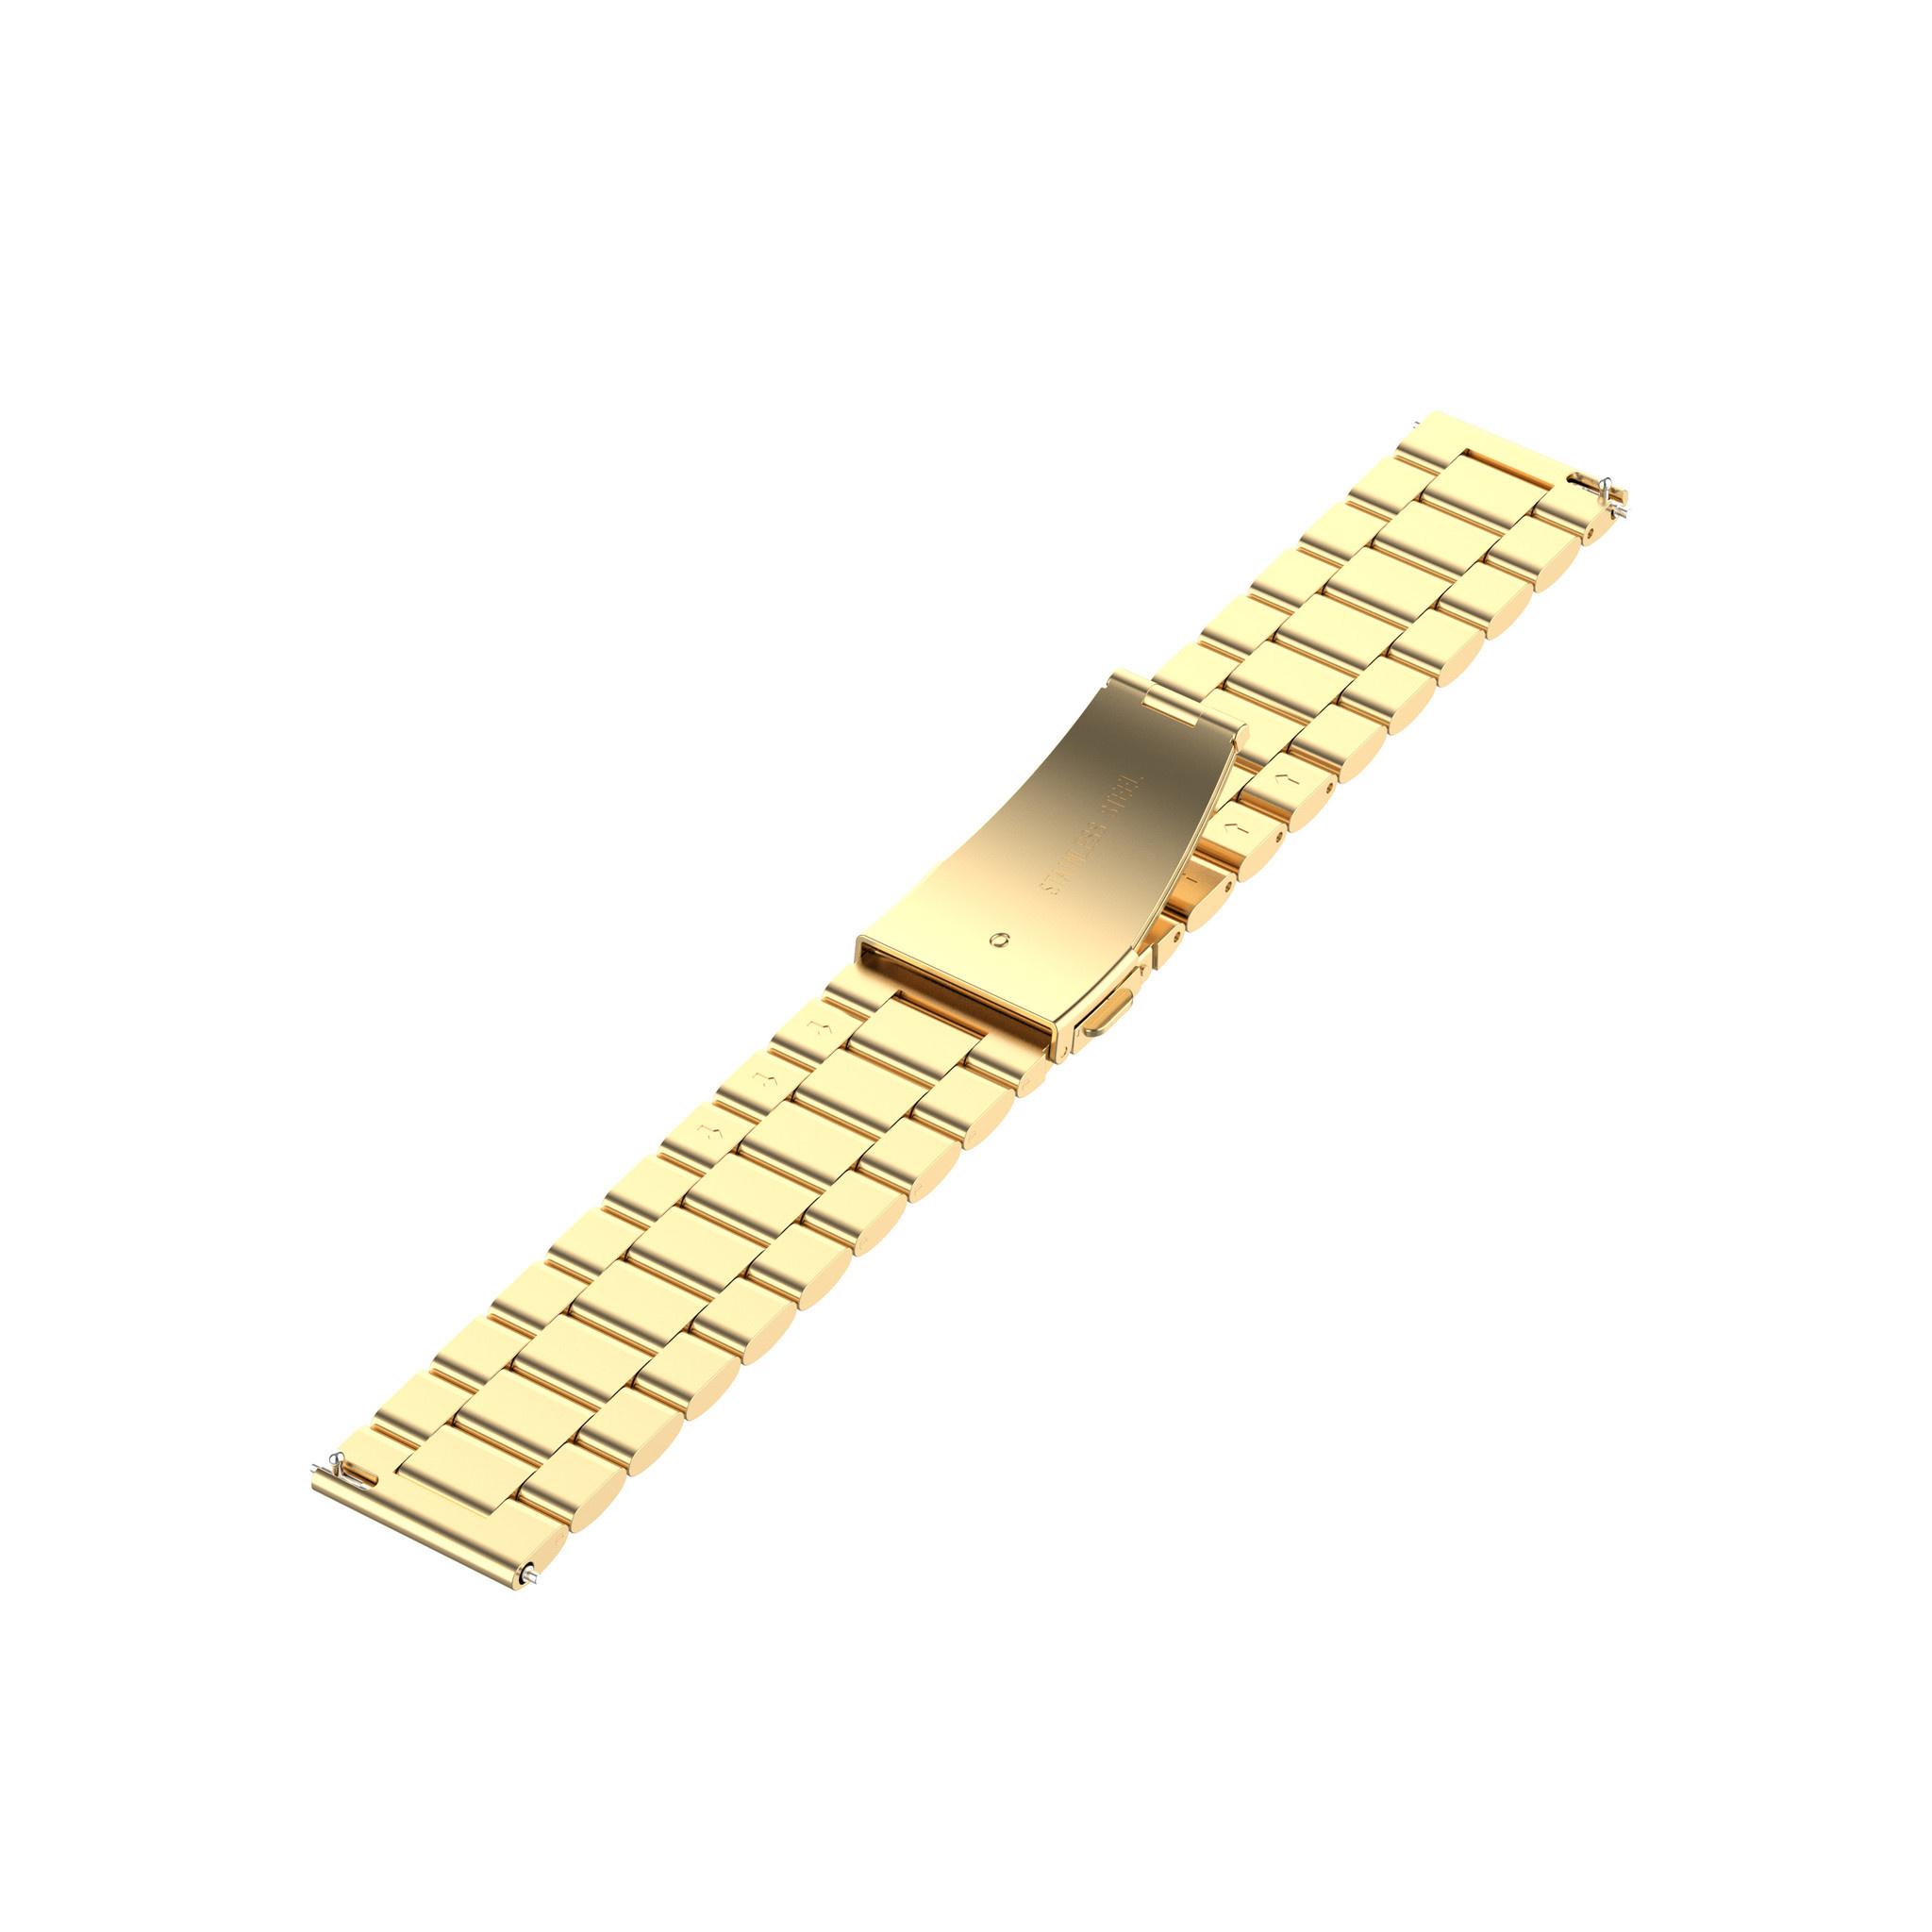 Cinturino a maglie in acciaio con perline per Samsung Galaxy Watch - oro